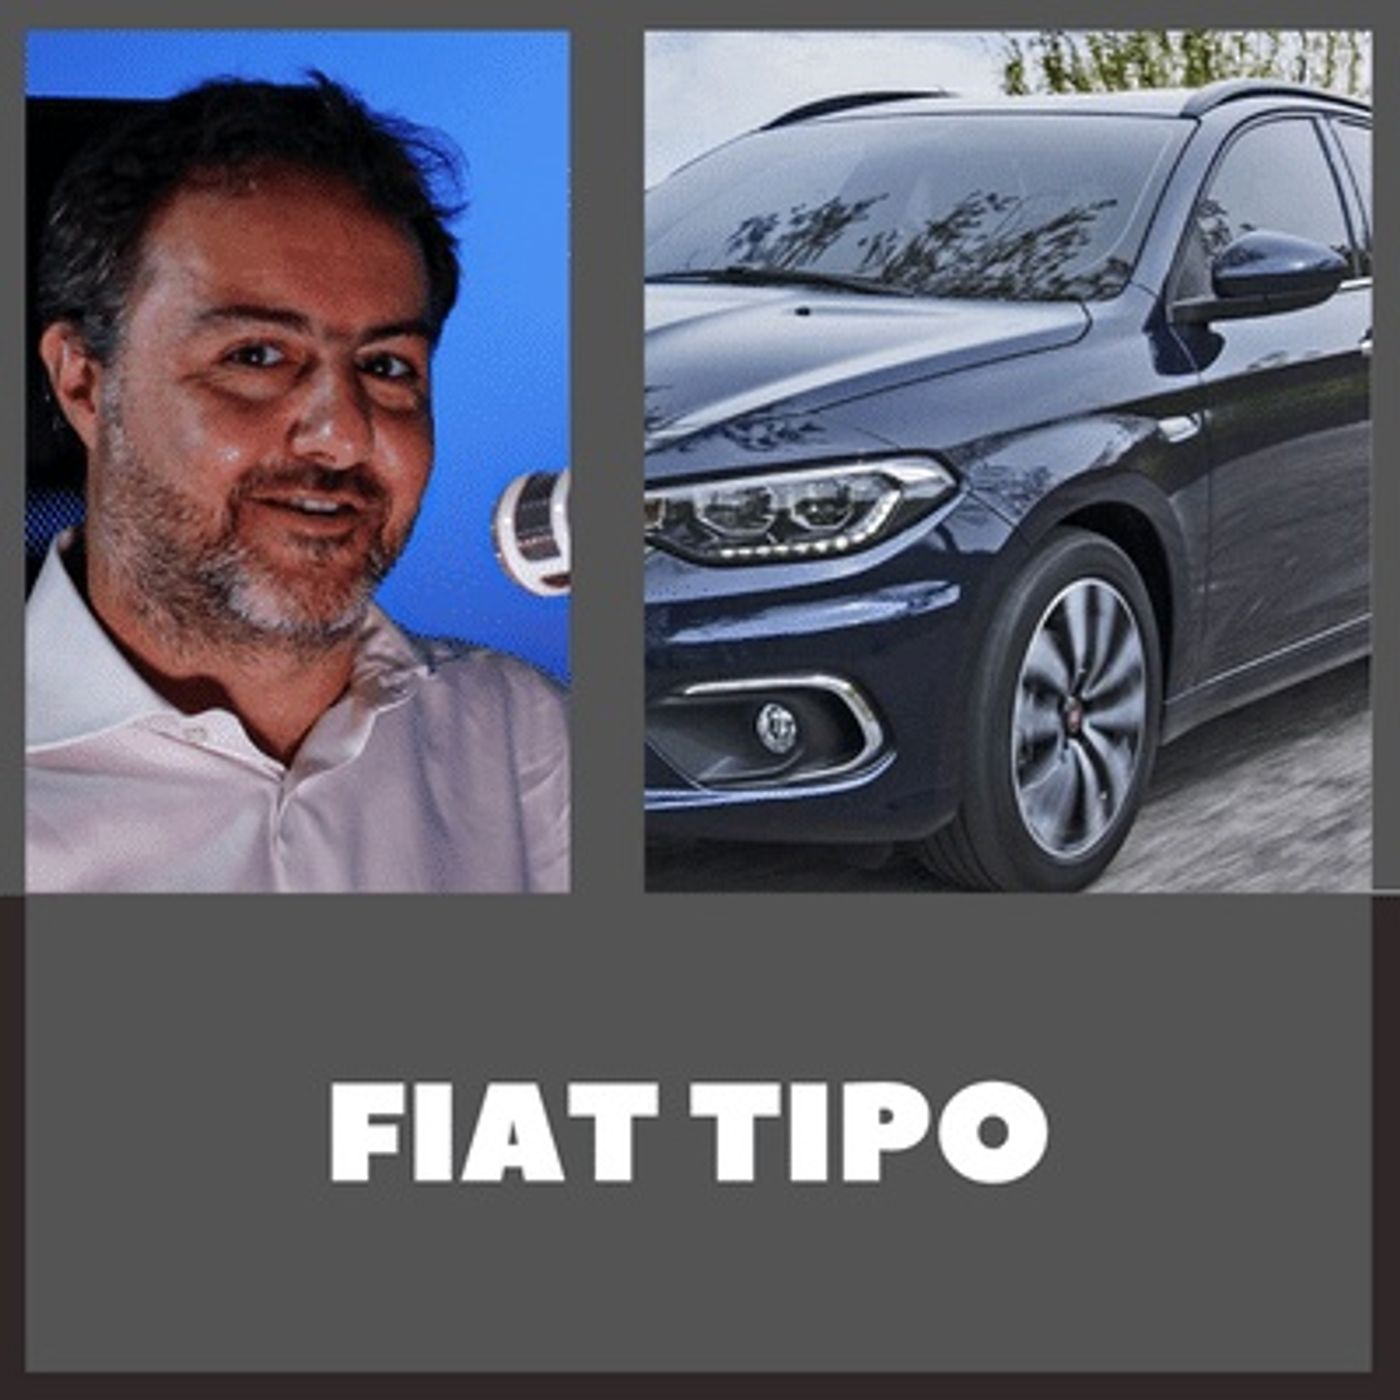 S1| Episodio 13: Fiat Tipo 2015, Montalbano... ero!